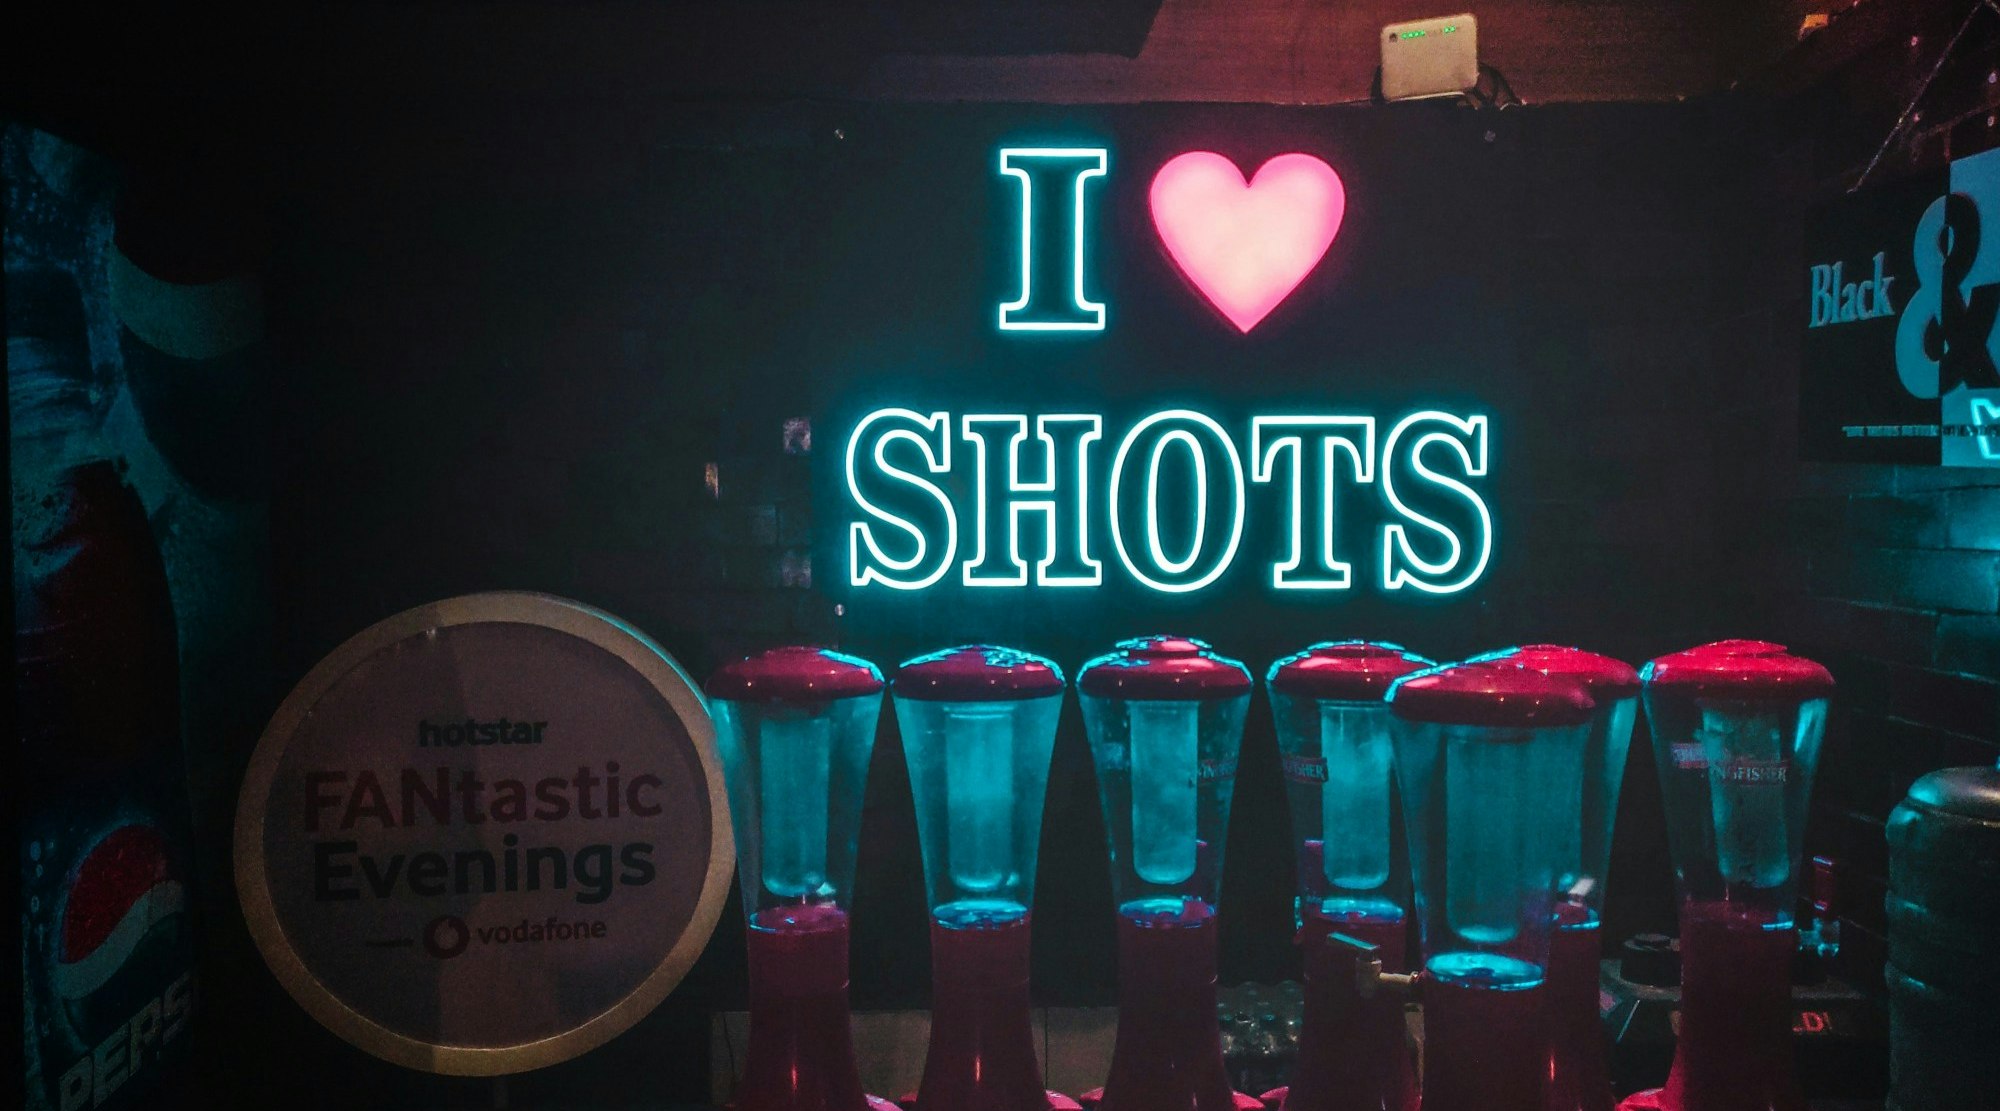 I love shots